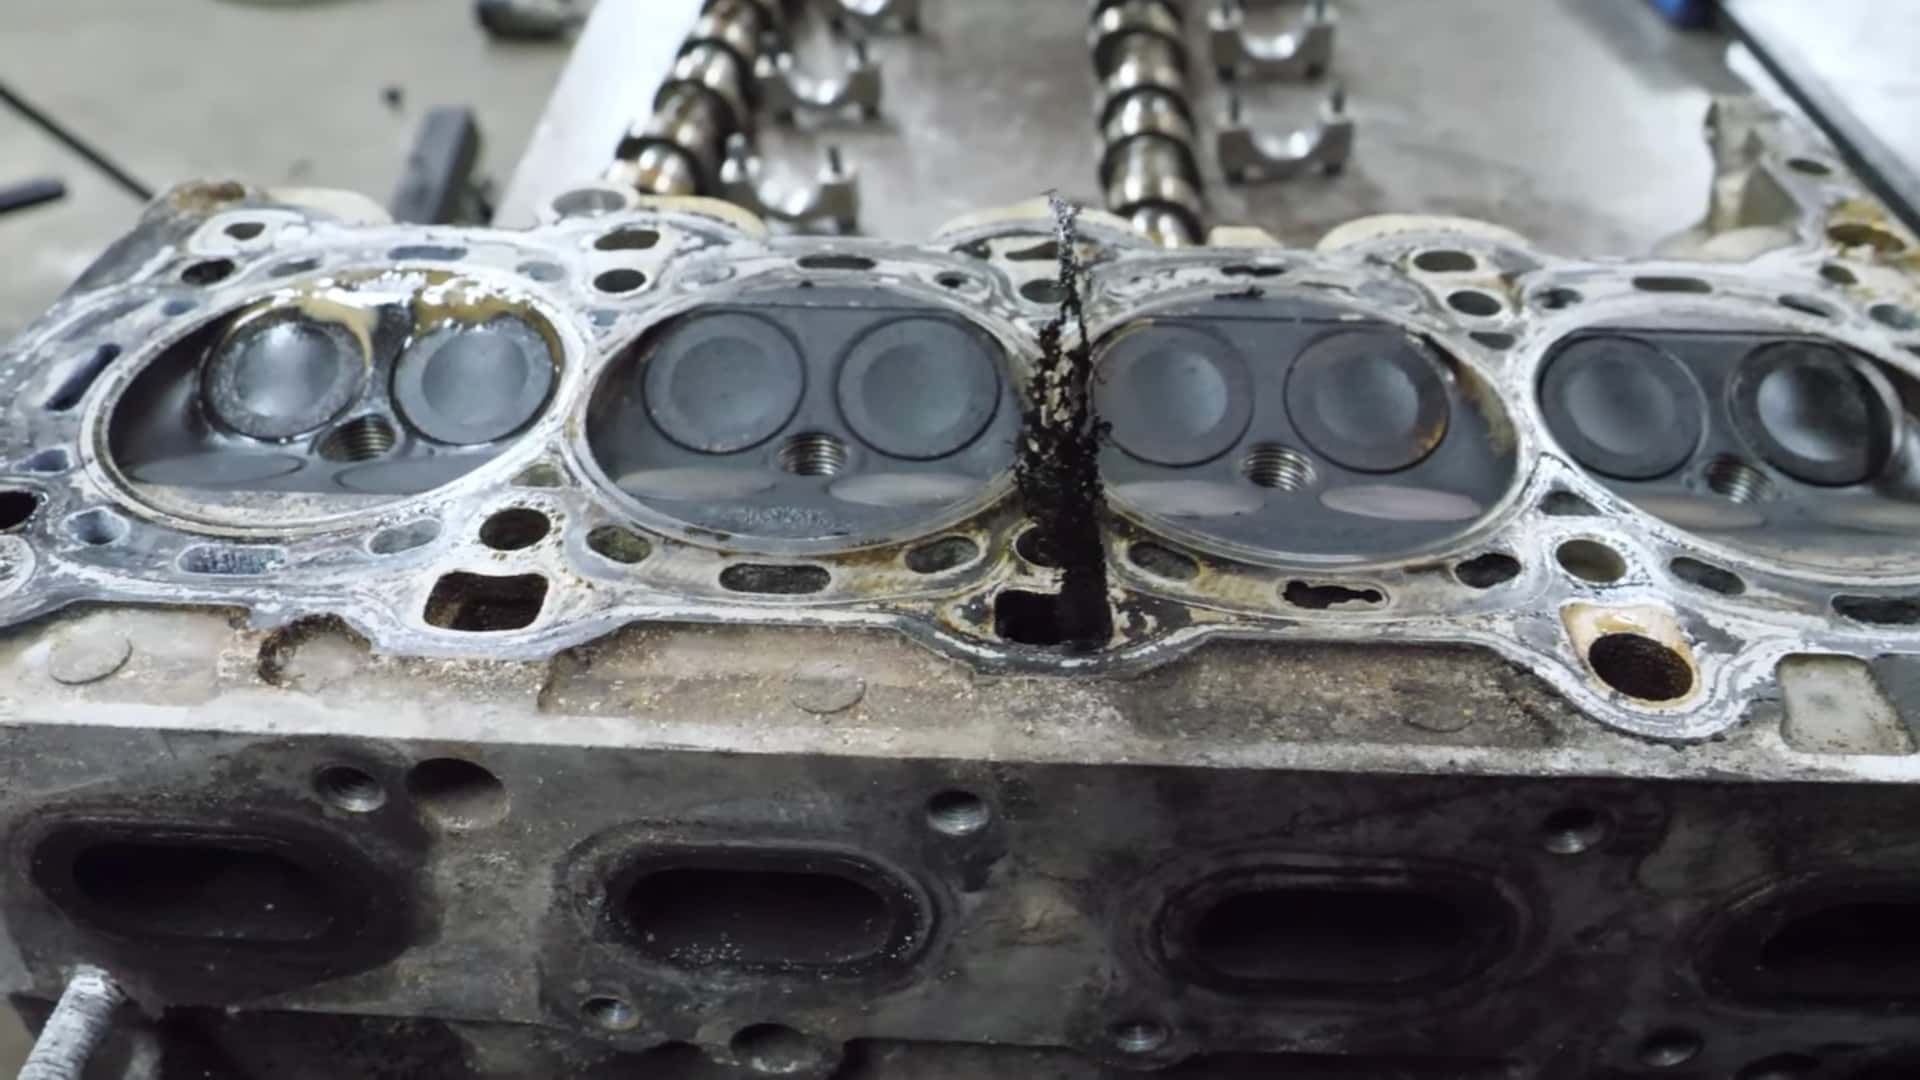 Chevy Turbo Engine Teardown näyttää, miksi jäähdytysnestettä ja öljyä ei saa koskaan sekoittaa